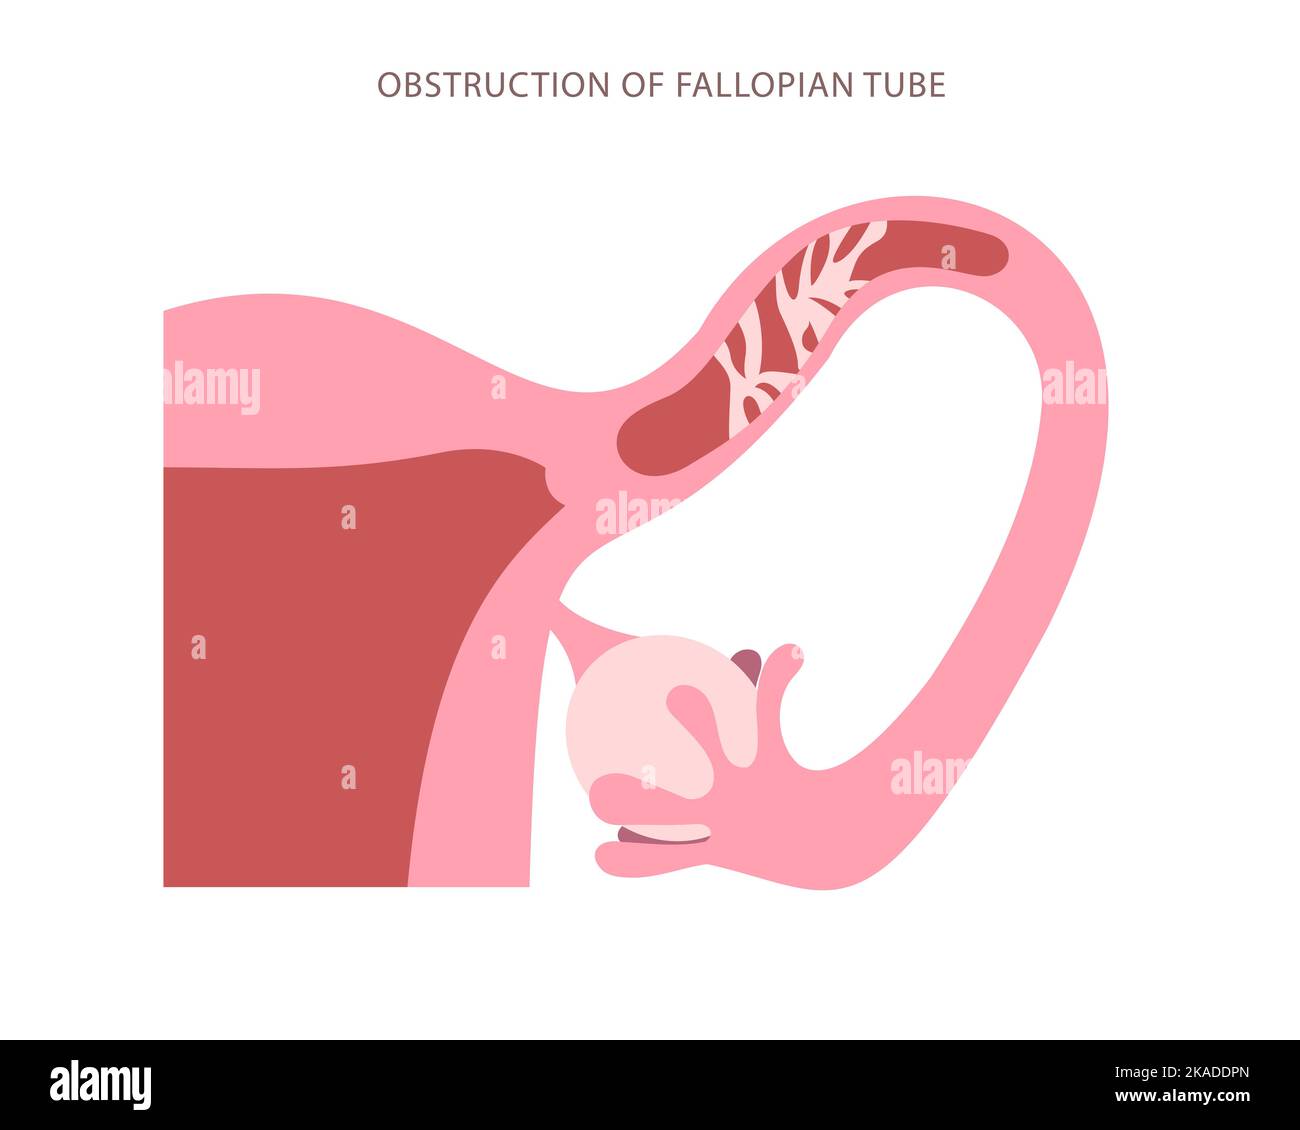 Grafico piatto del tubo di Falloppio ostruito. Blocco dello schema di ingrandimento elevato del tubo uterino Illustrazione Vettoriale